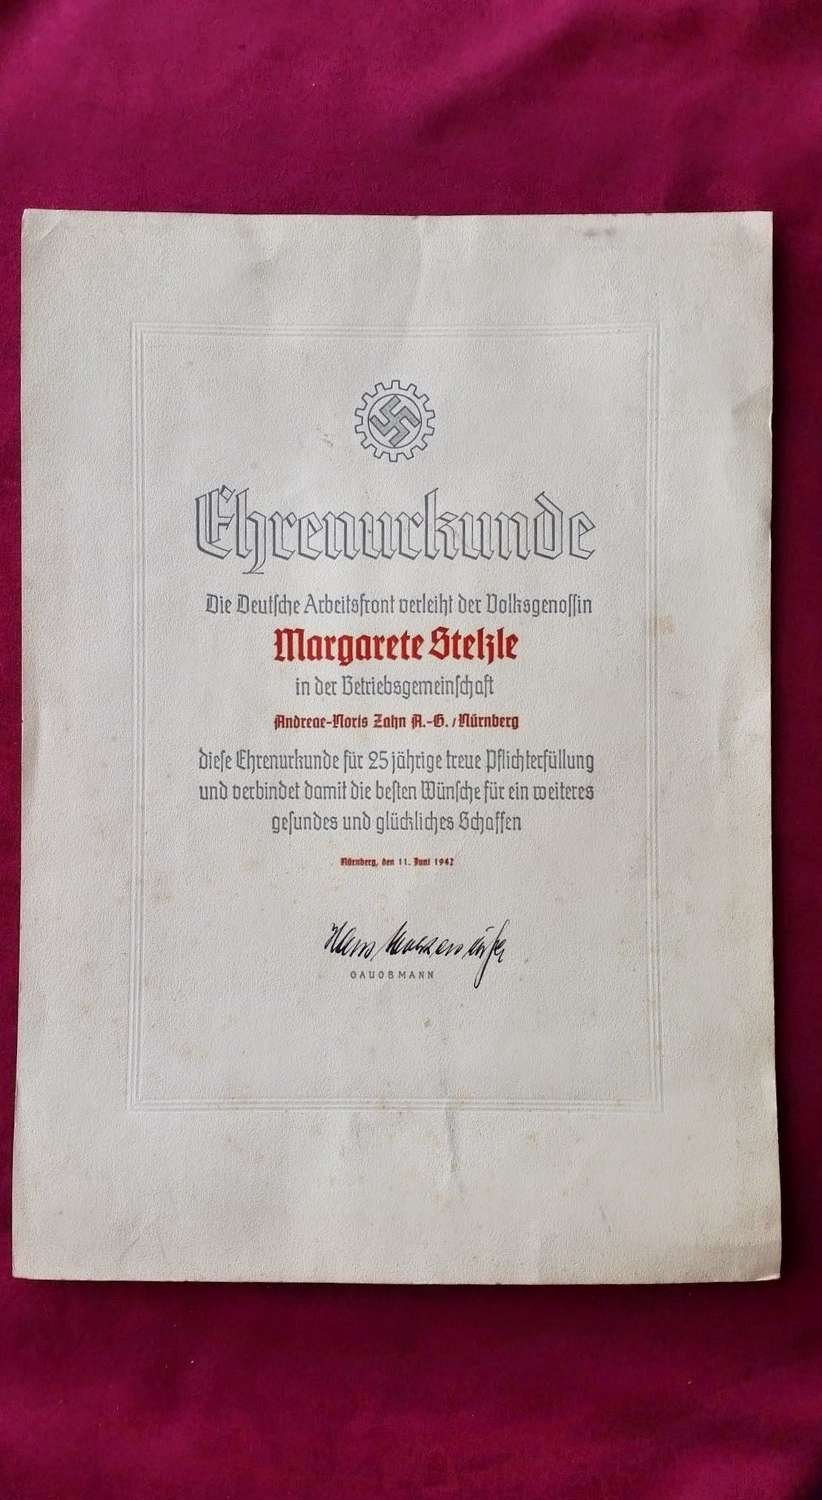 Deutsche Arbeitsfront 25 Years Service Certificate 11th June 1942